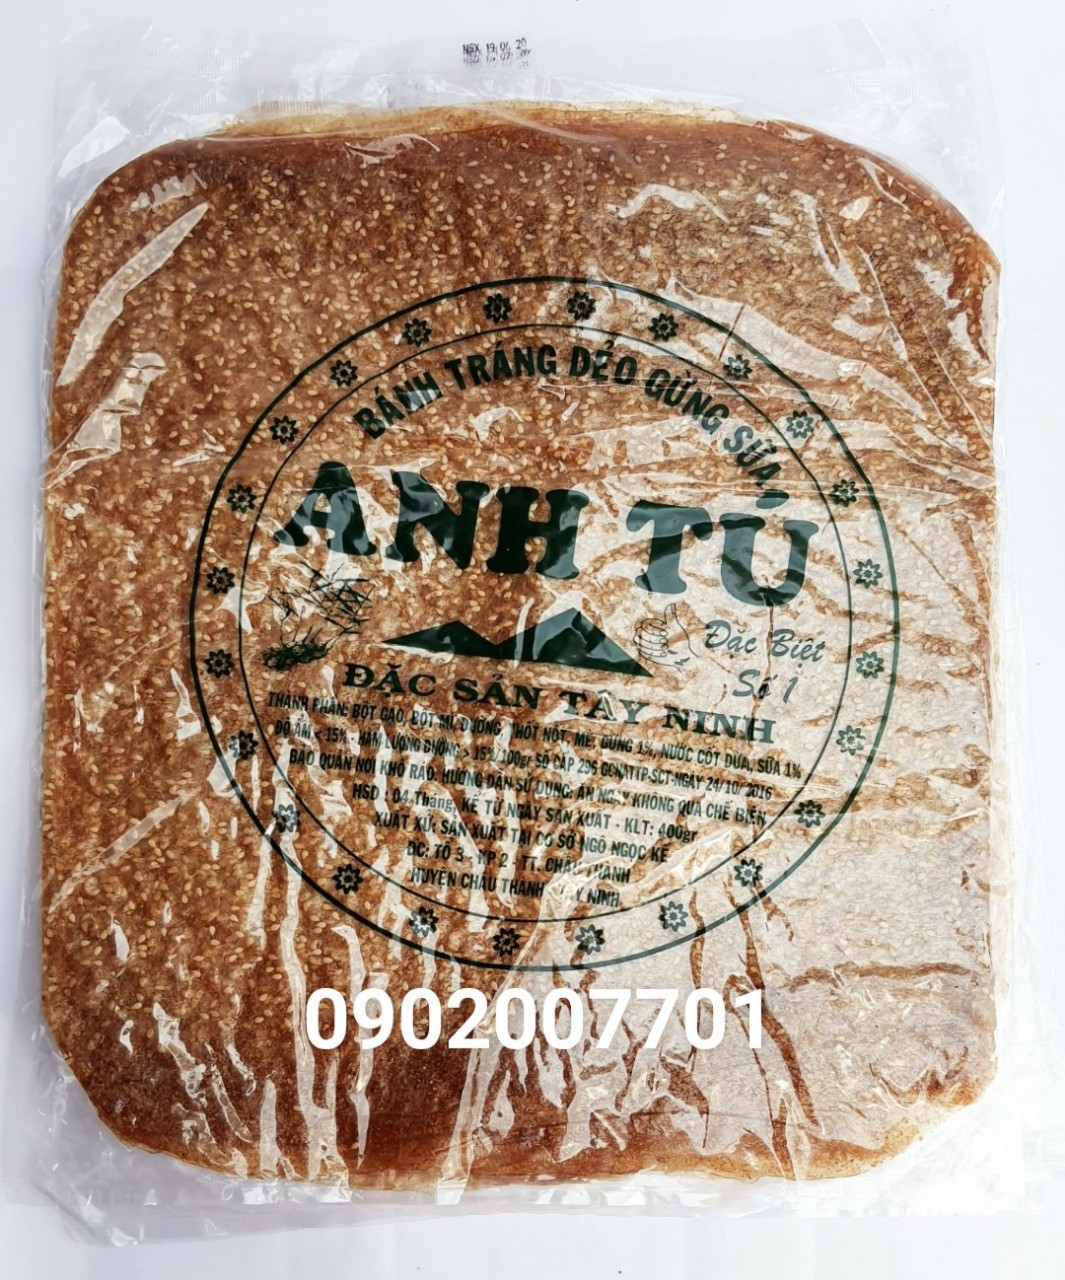 Xấp 400g Bánh Tráng Dẻo Gừng Sữa Anh Tú Chữ Xanh-đồ ăn vặt-tết-tết 2022